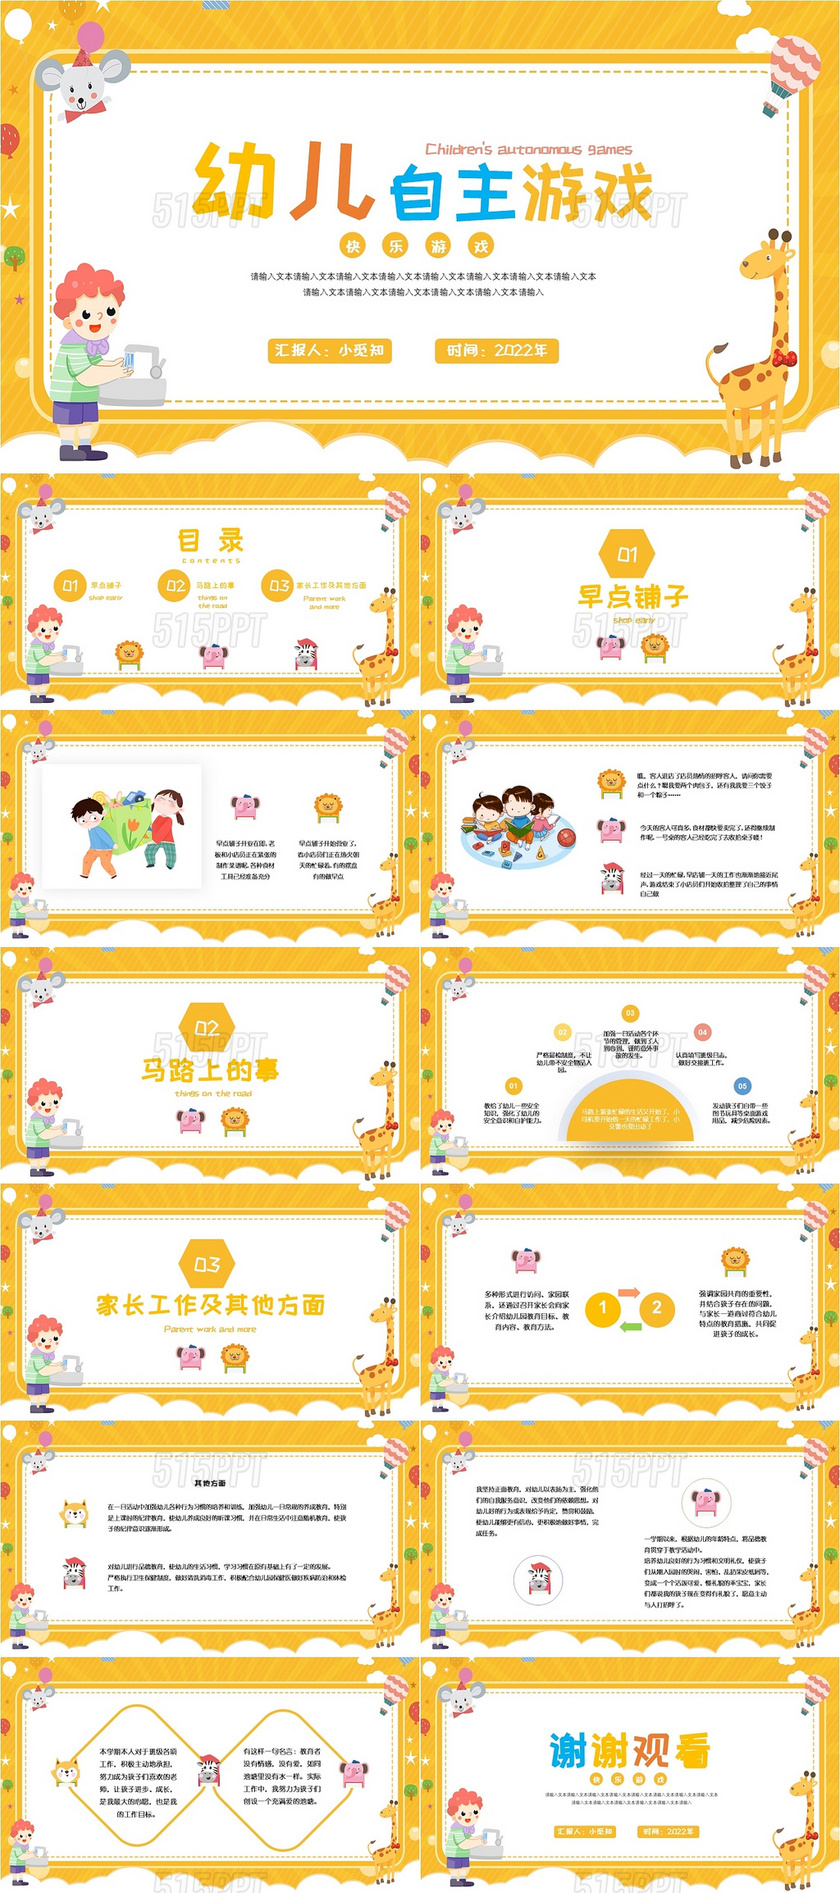 黄色卡通儿童幼儿自主游戏PPT模板幼儿园自主游戏